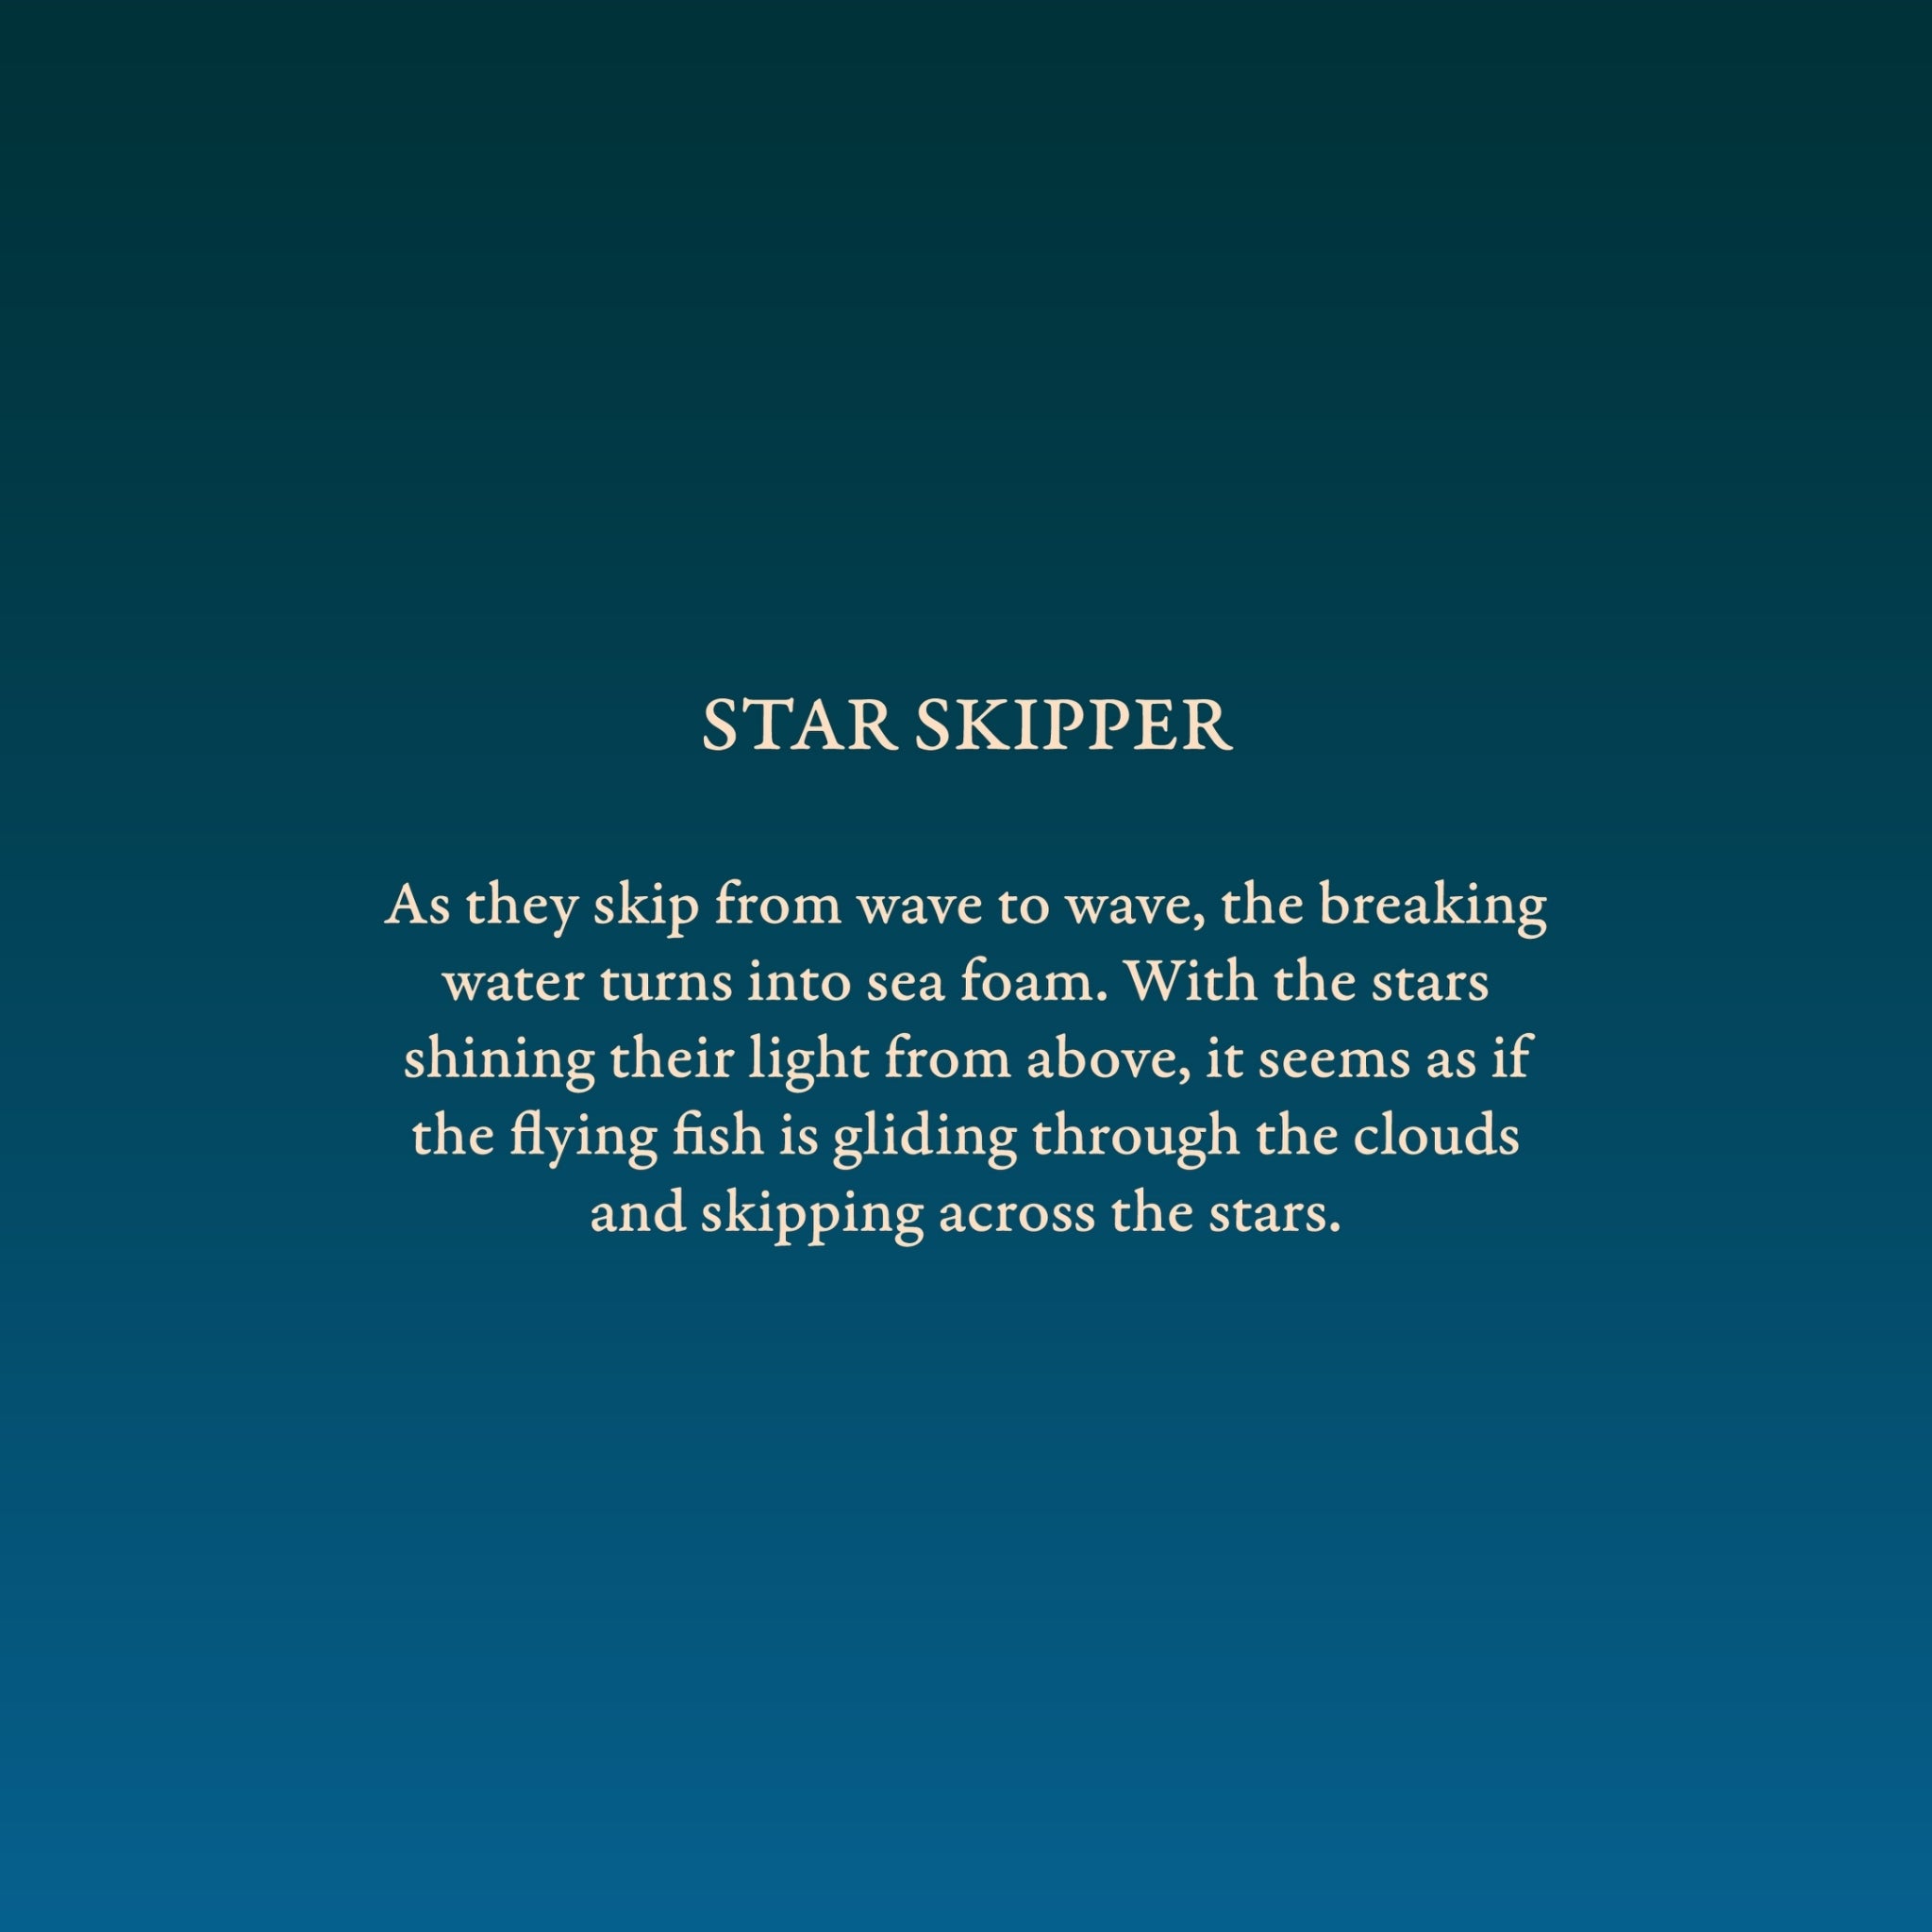 STAR SKIPPER